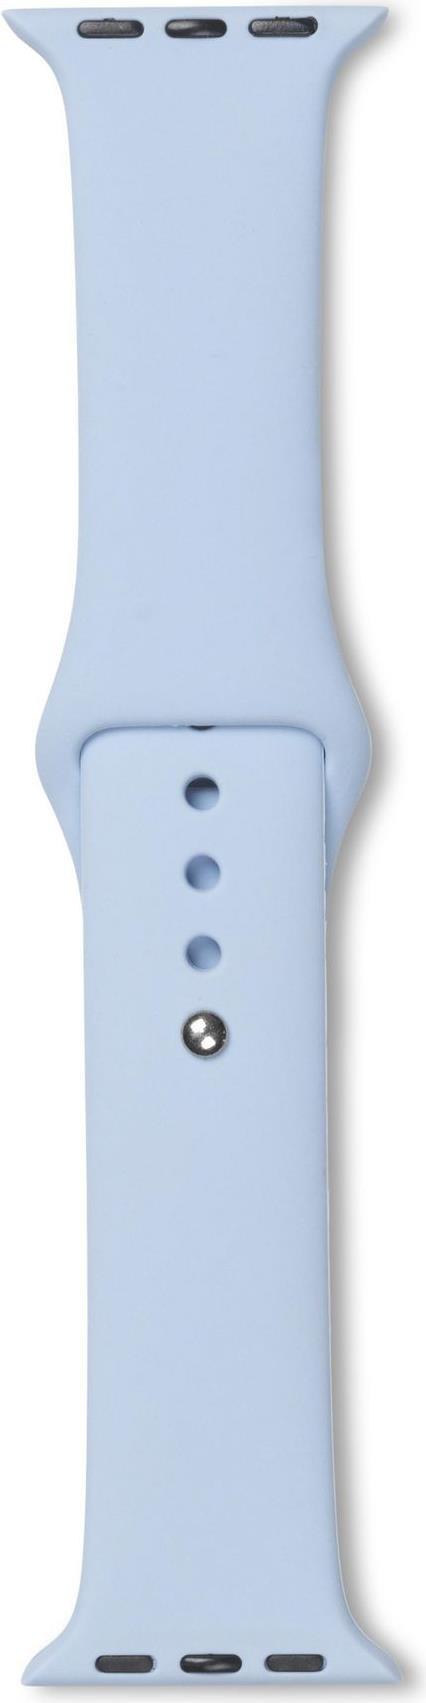 eSTUFF ES660147. Produkttyp: Gurt, Kompatibler Gerätetyp: Smartwatch, Produktfarbe: Blau. Gewicht: 15 g, Verpackungsbreite: 52 mm, Verpackungstiefe: 10 mm. Menge pro Packung: 1 Stück(e) (ES660147)